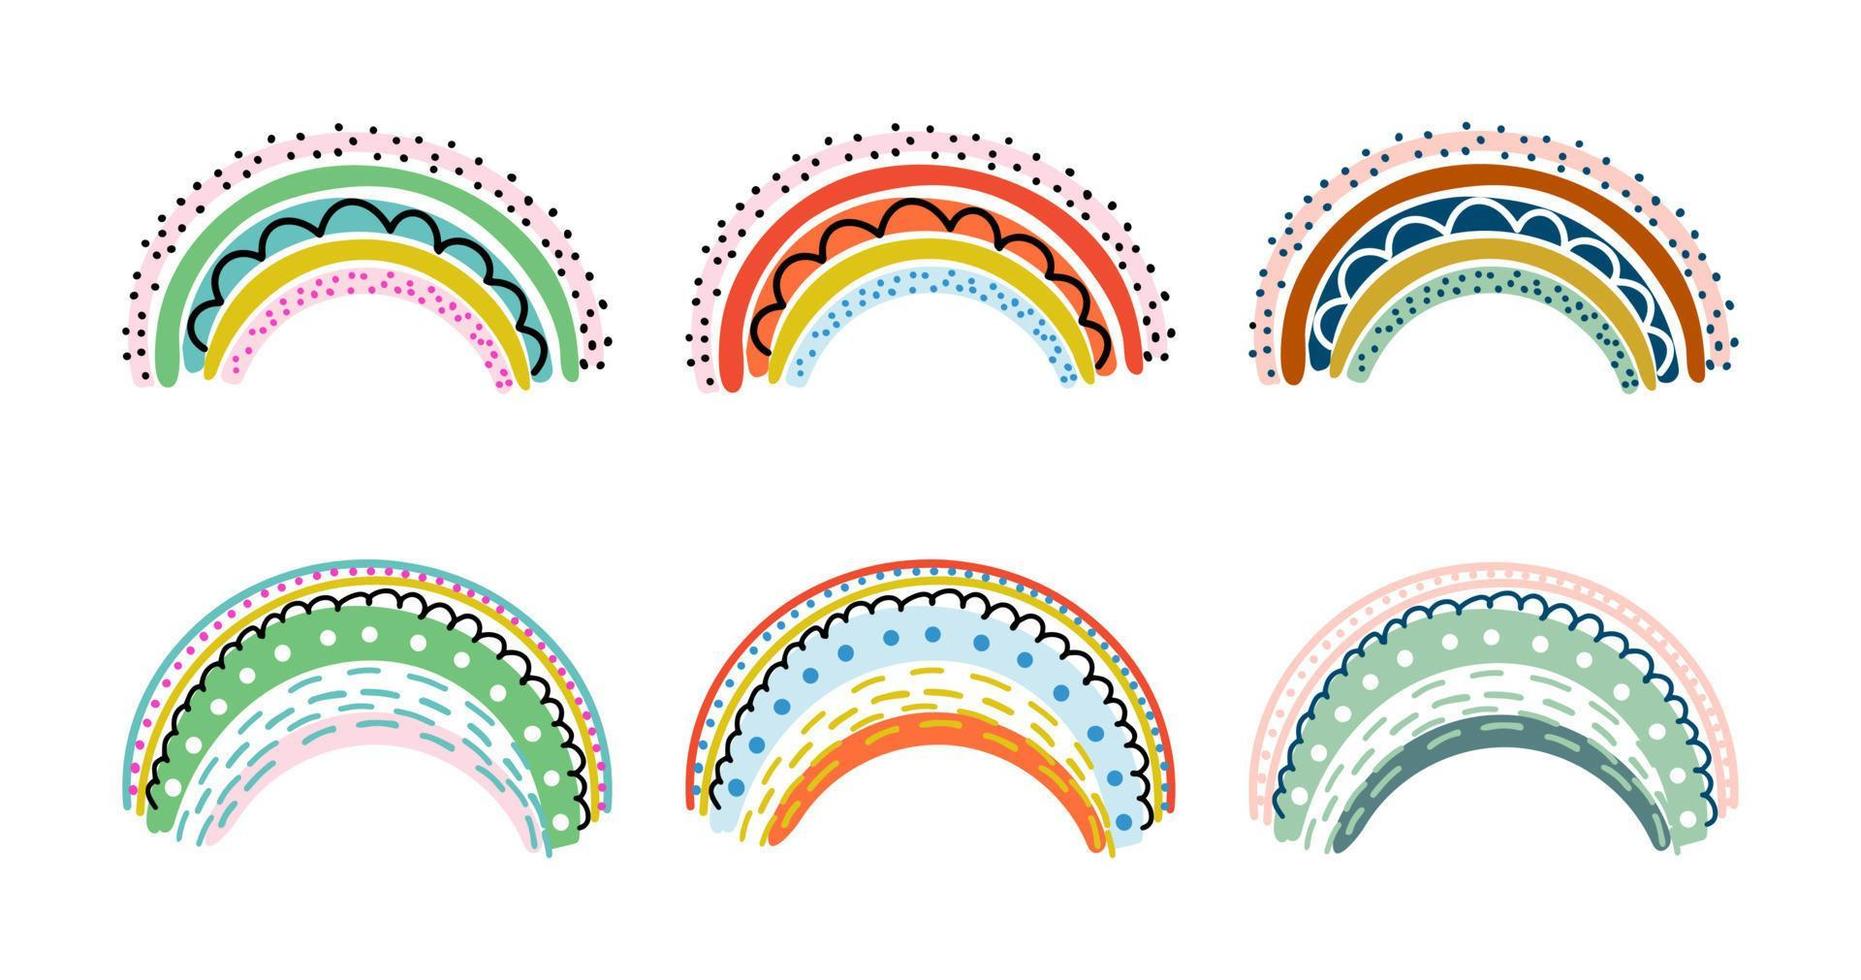 uppsättning av regnbågar i barnslig scandinavian stil isolerat på vit. söt samling av färgrik hand dragen vektor illustrationer. perfekt för ungar, barnkammare dekoration, bebis dusch, fest, grafik.